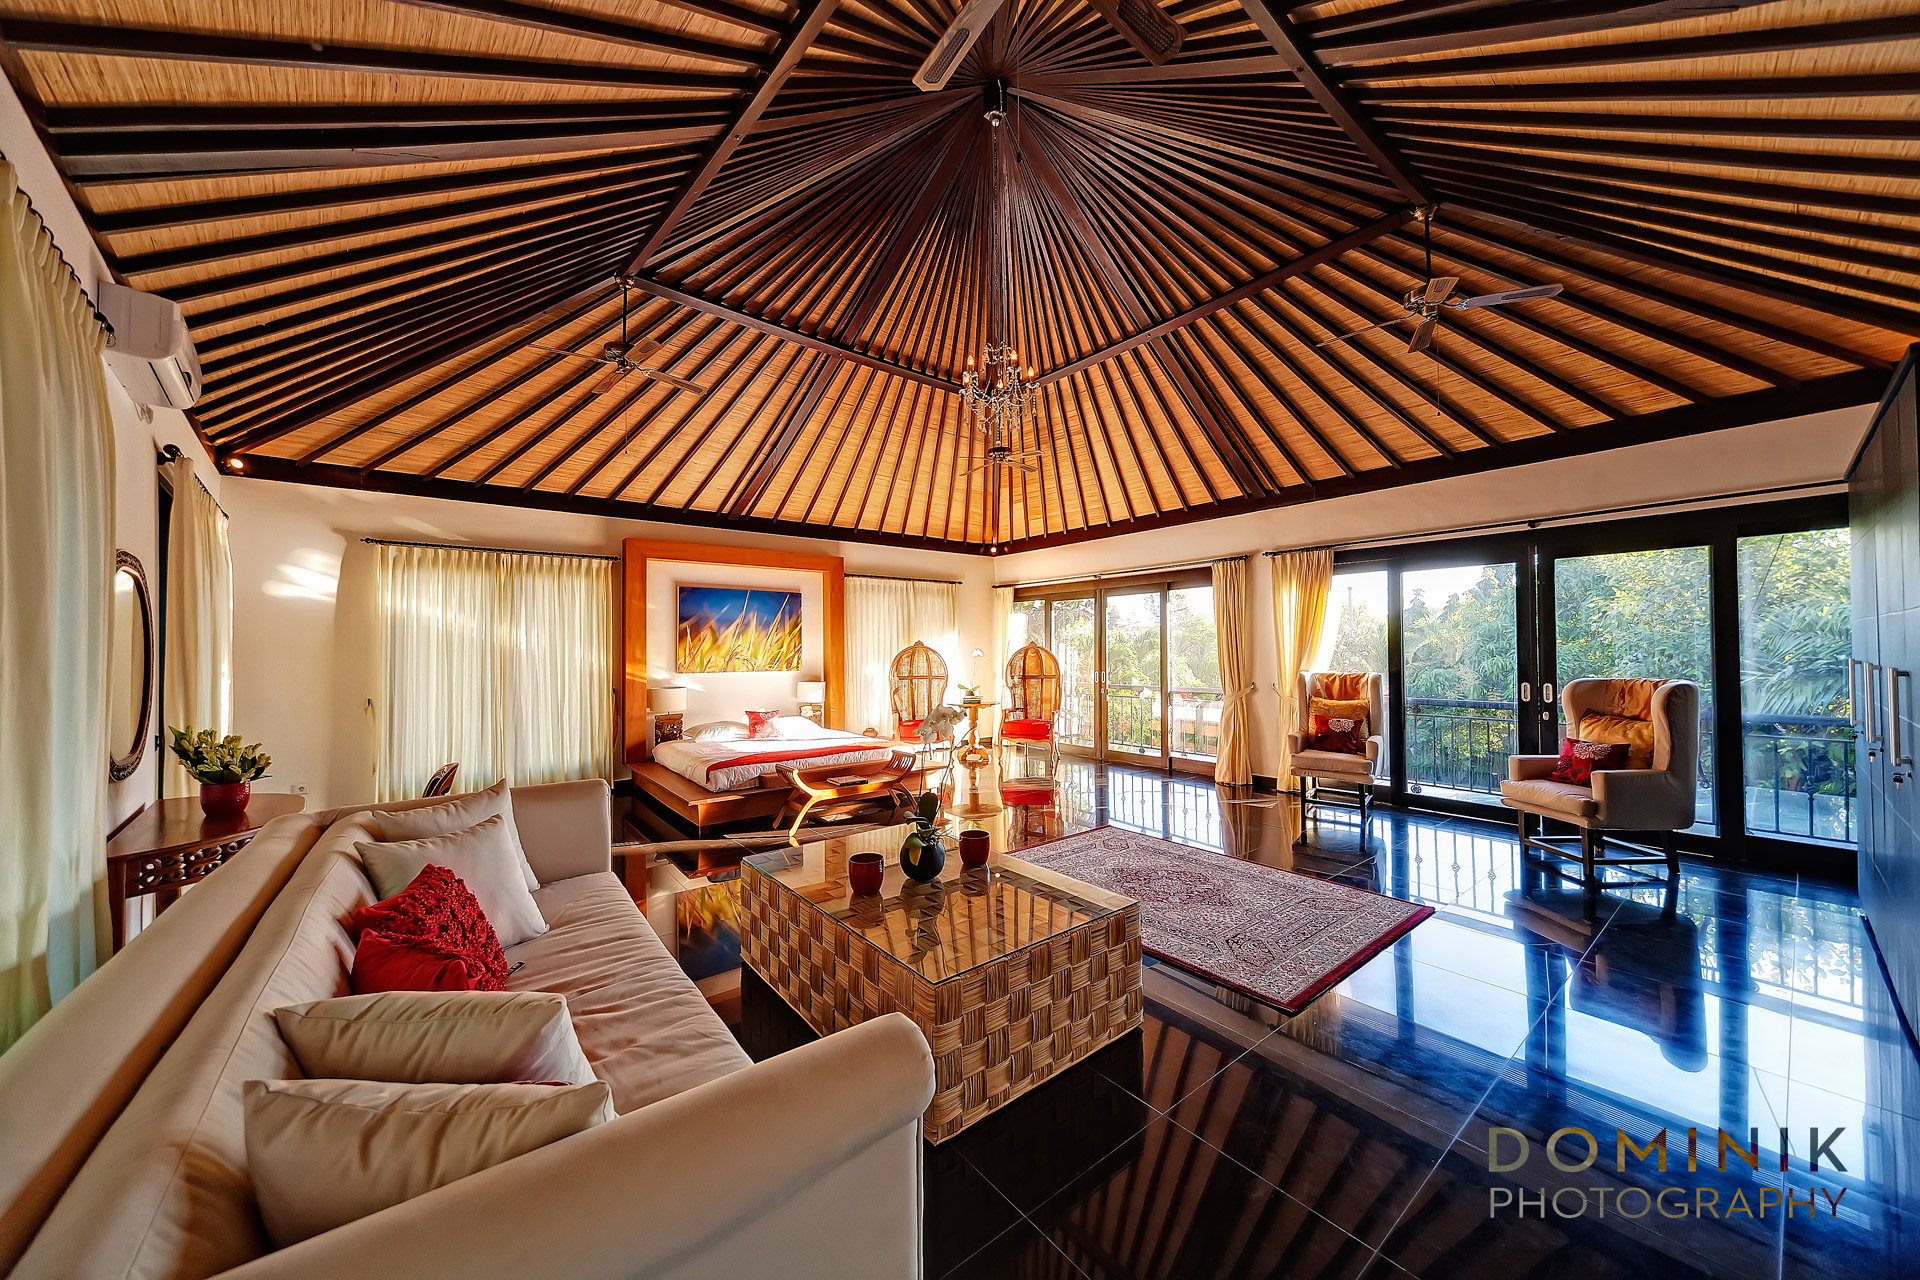 Photos of Bali villa interiors